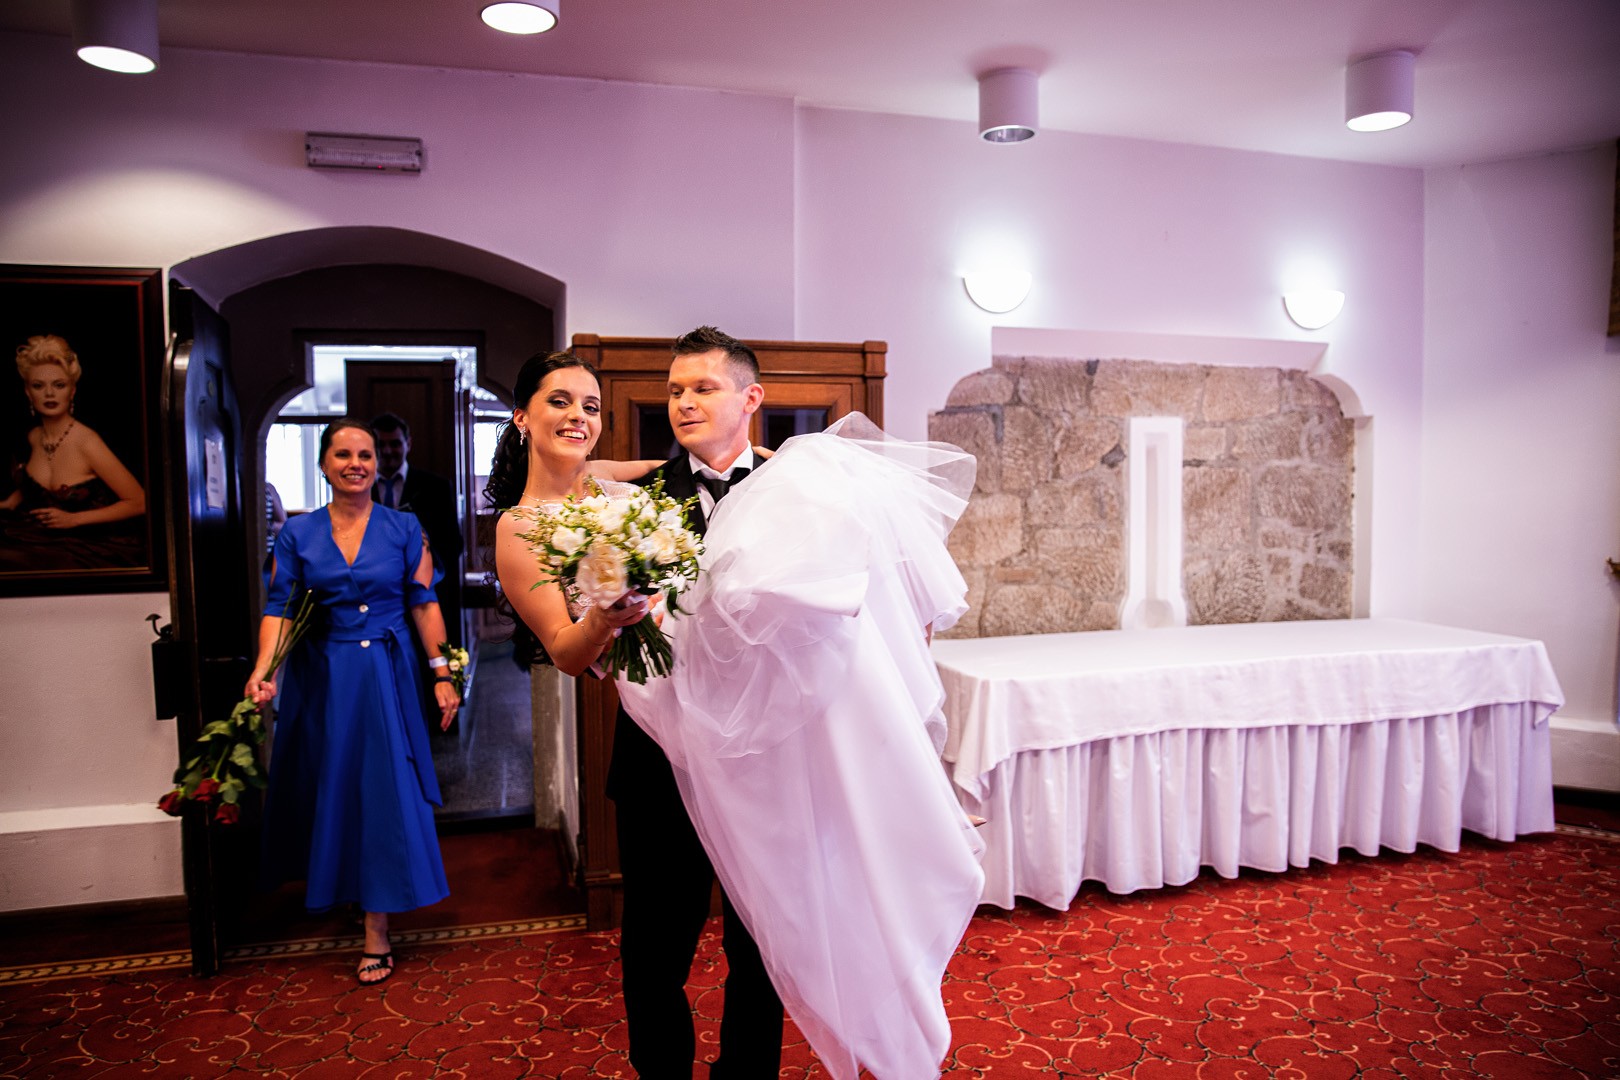 Picturesque dream wedding of Kloudy & Michal in Hluboká nad Vltavou. - 0261.jpg